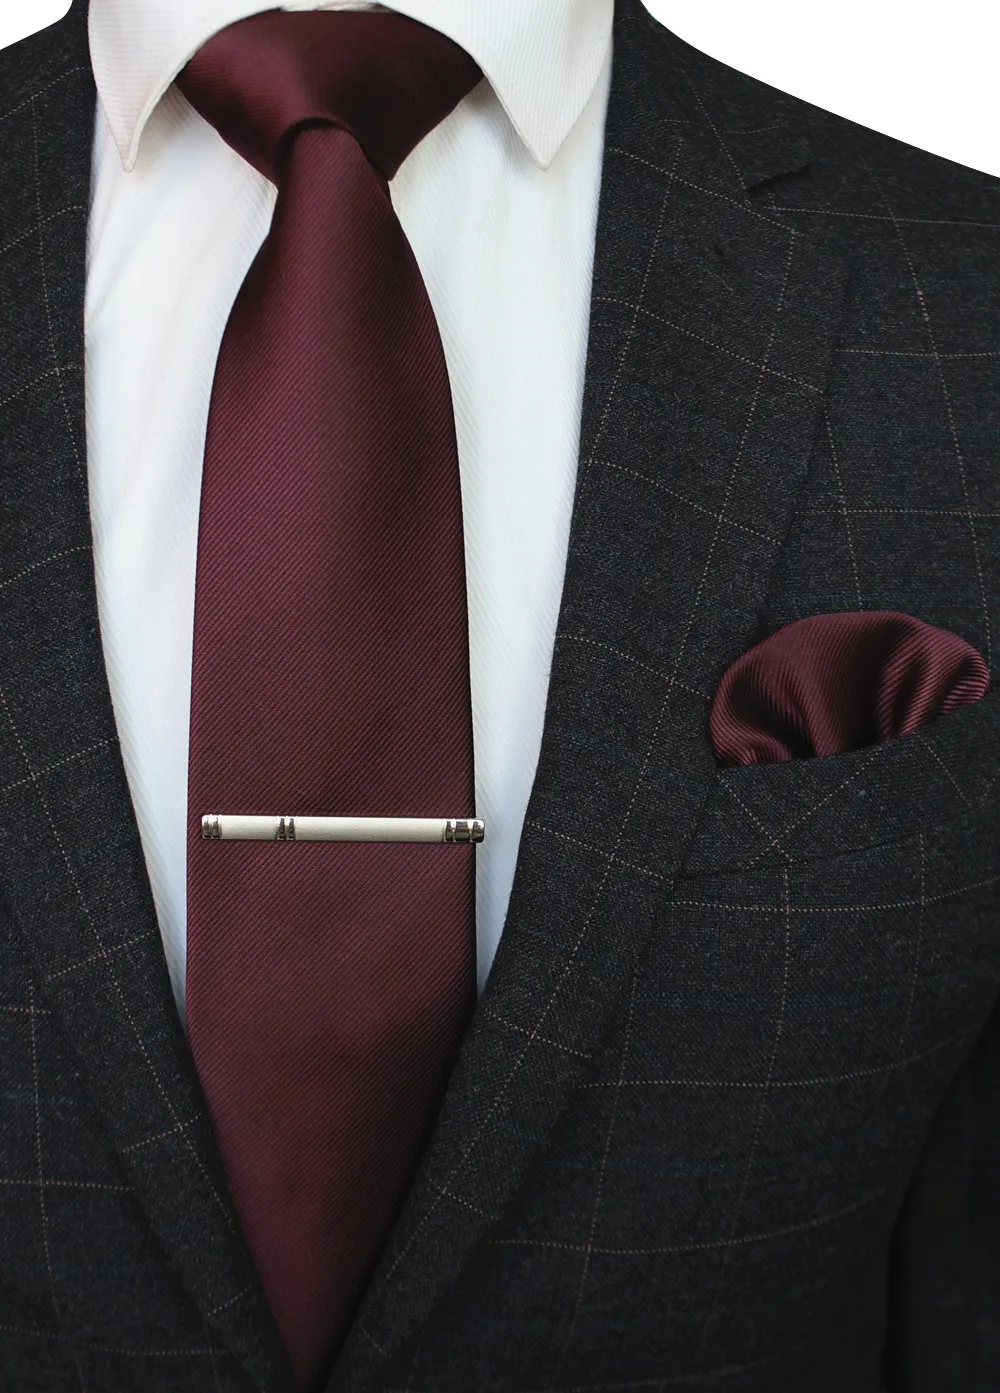 JEMYGINS Оригинальный Новый одноцветное шелковый галстук мужской формальный плотная красный галстук платок носовой зажим для галстука